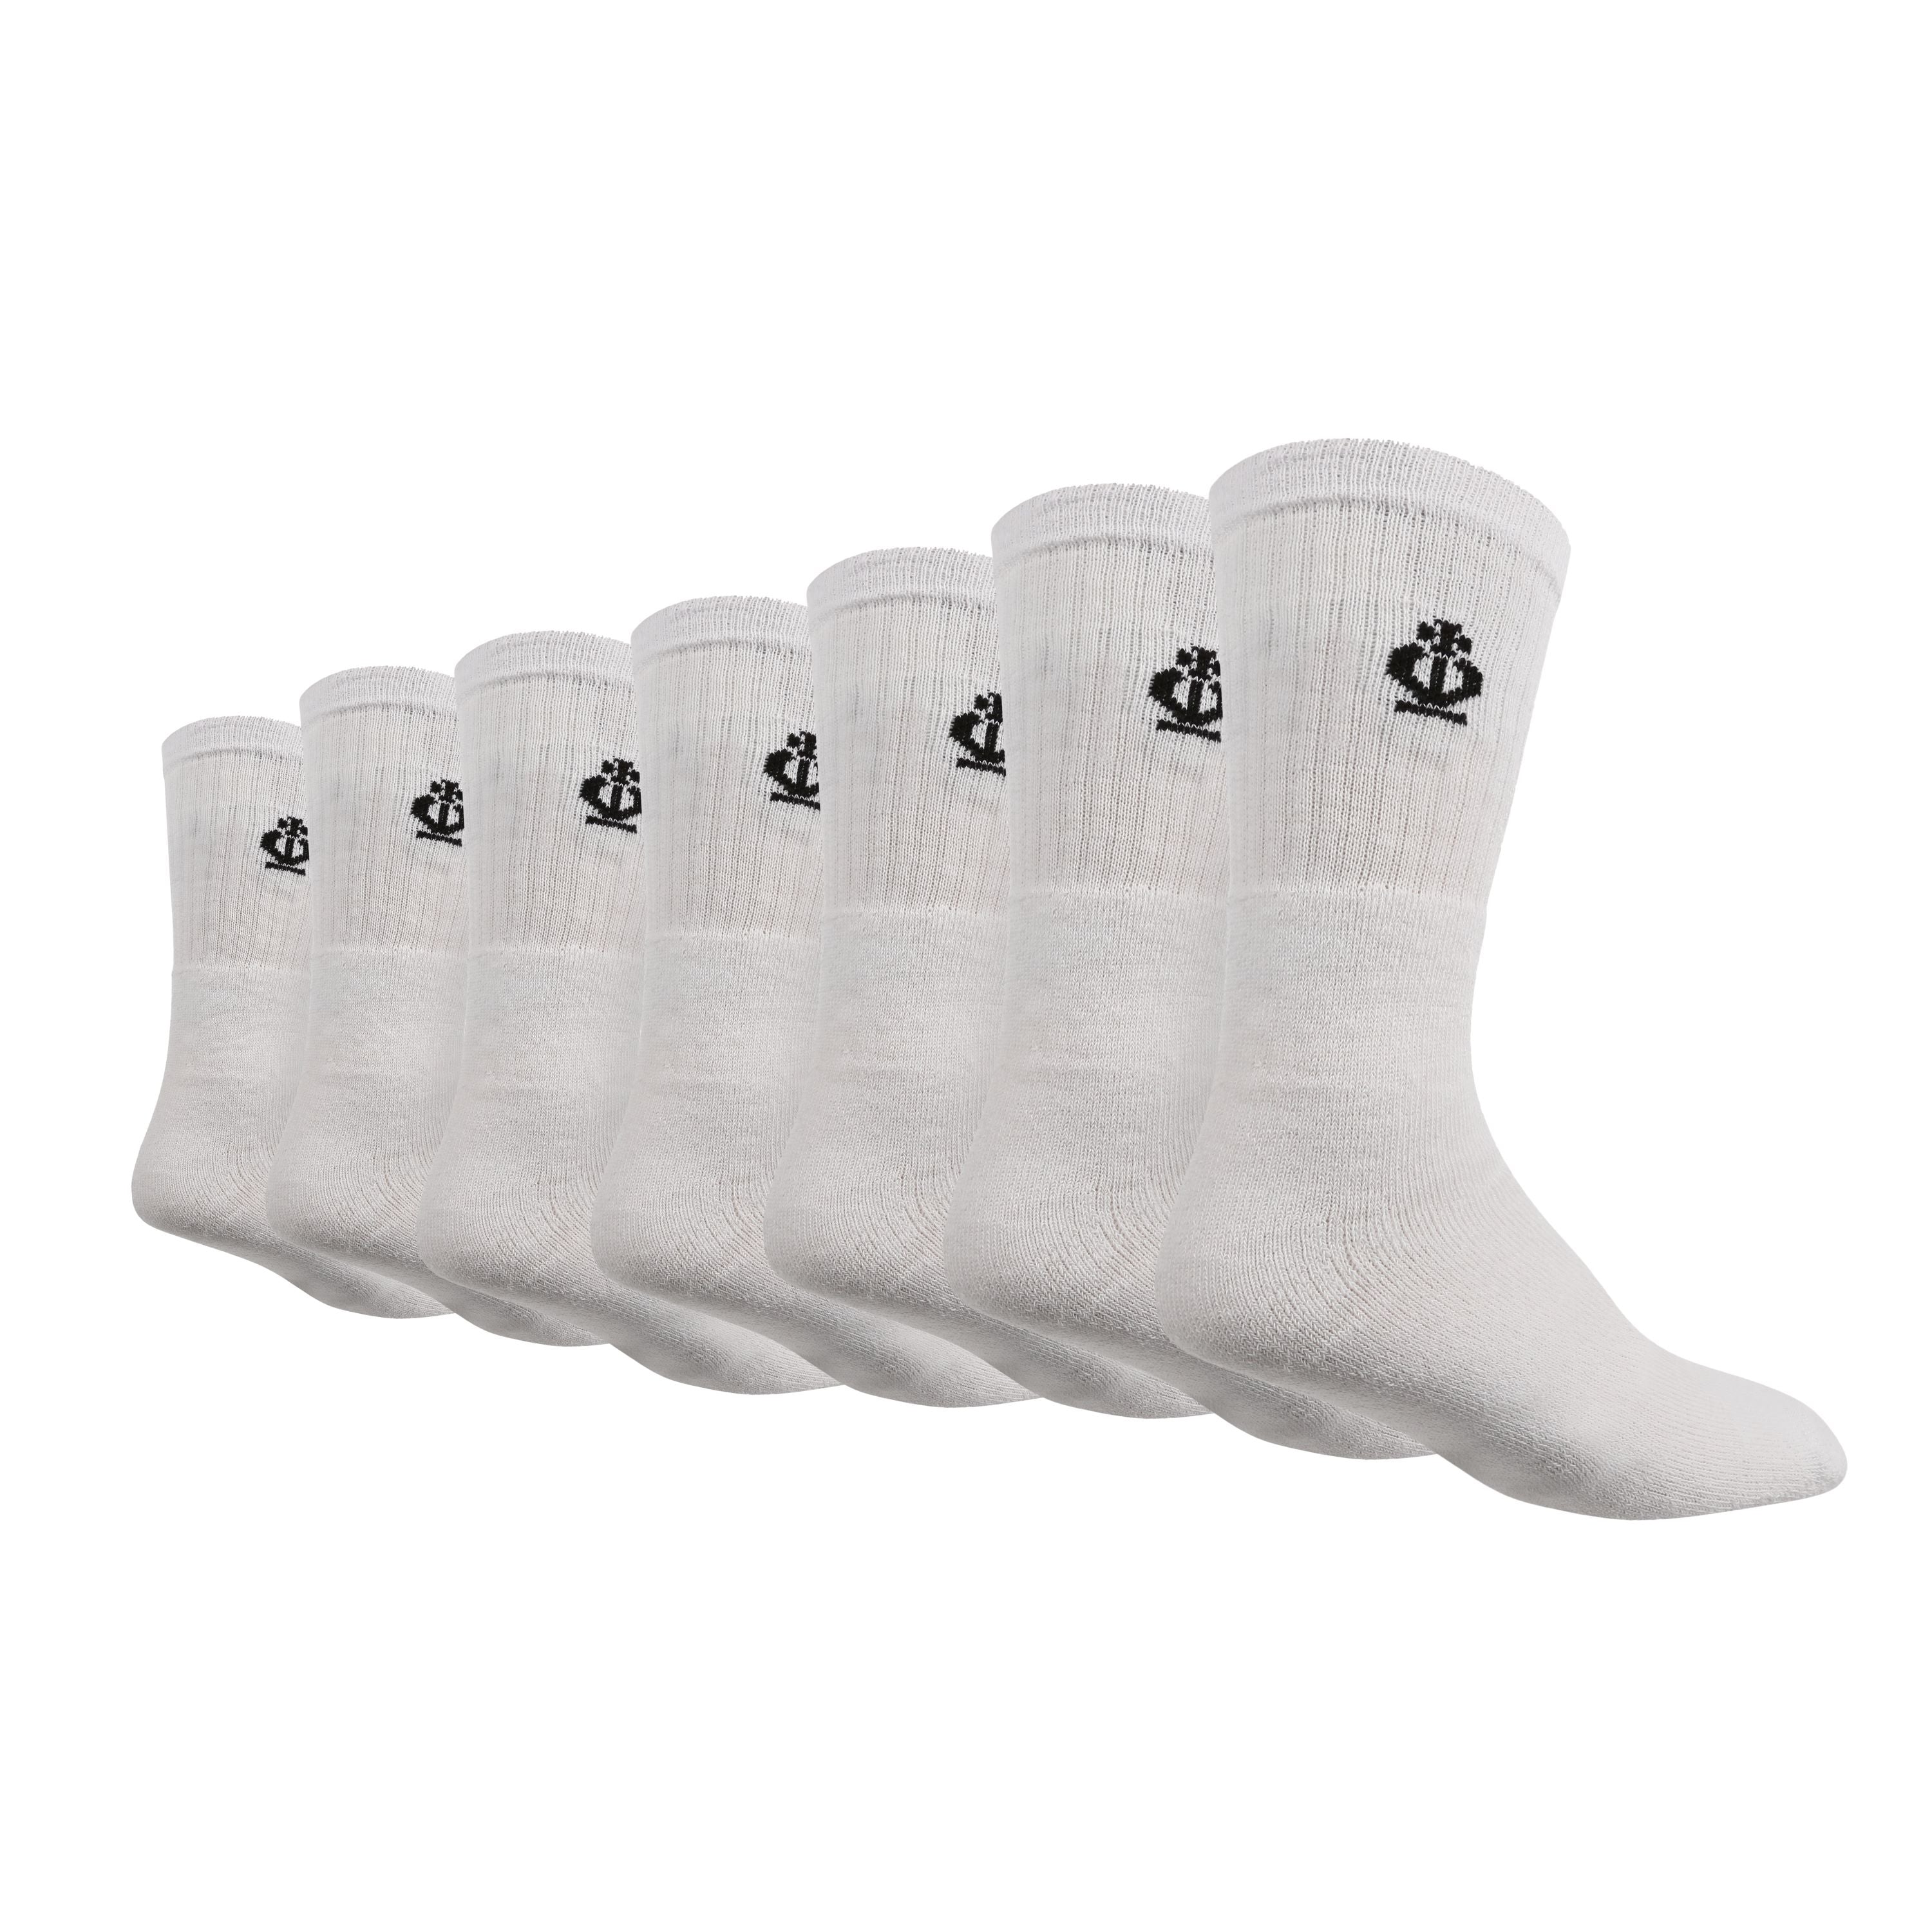 JEFF BANKS Men's 7PK Cotton Sports Crew Socks